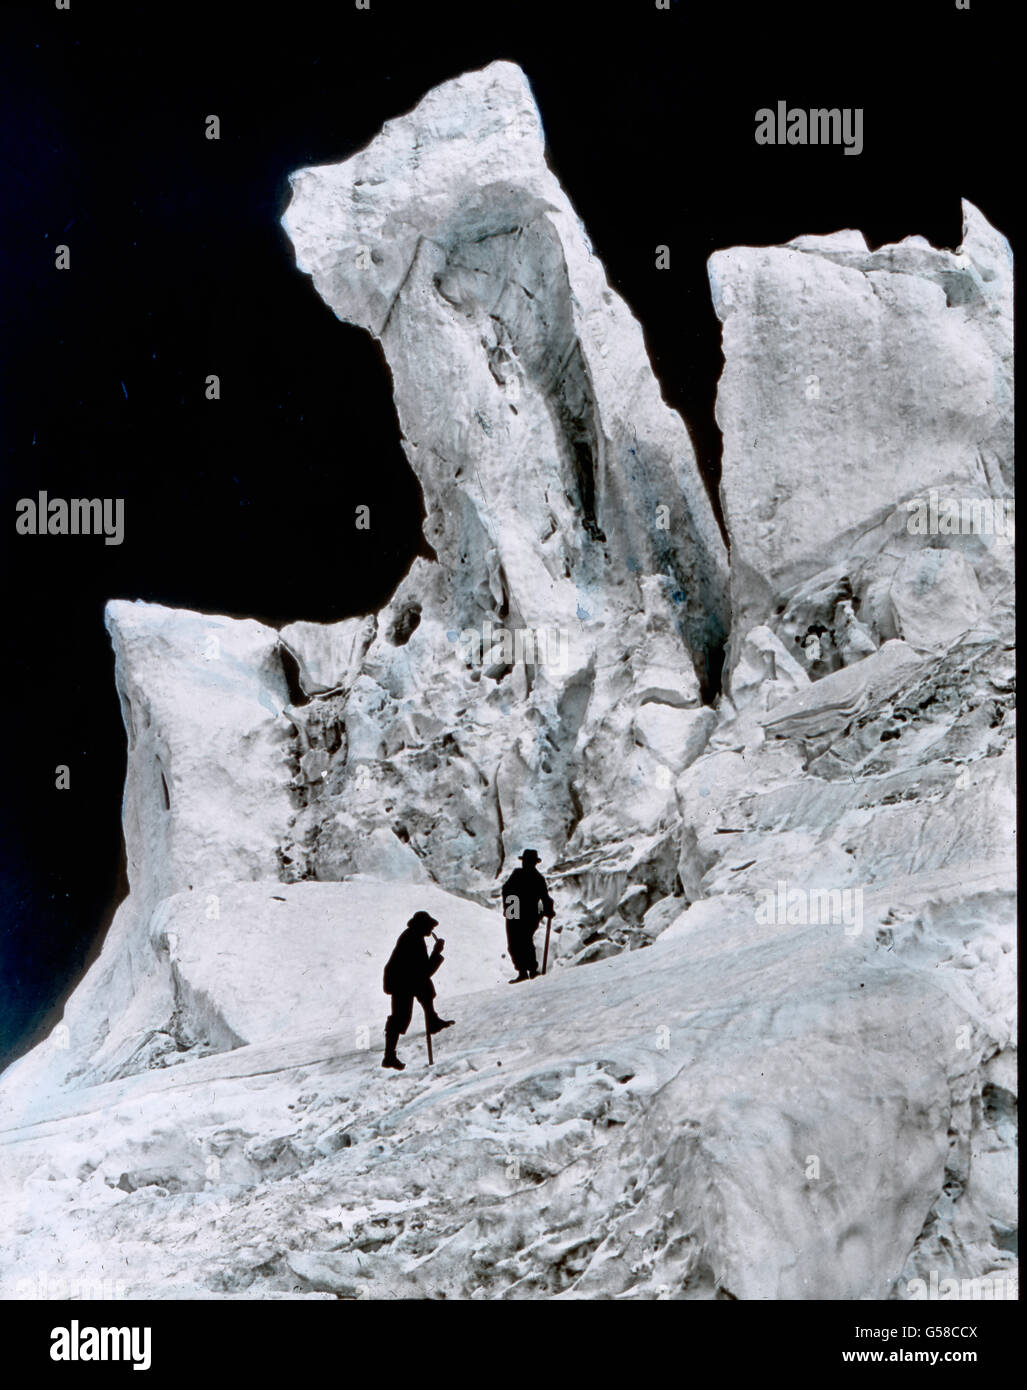 Zu beiden Seiten des eben erwähnten Eistales steigen die Eismassen in den abenteuerlichsten Formen empor. Wir betrachten mit Staunen die phantastischen Türme und Nadeln, deren Oberfläche von den Sonnenstrahlen zernagt und zerfressen ist. Tiefblau erscheinen uns die Hohlräume, während die Außenseite das Licht strahlend zurückwirft und ein unheimliches Glitzern und Flimmern uns blendet. Mont Blanc, mountain chain, Ice storm of glacier Bossons, history, historical, Carl Simon, hand coloured glass slide Stock Photo